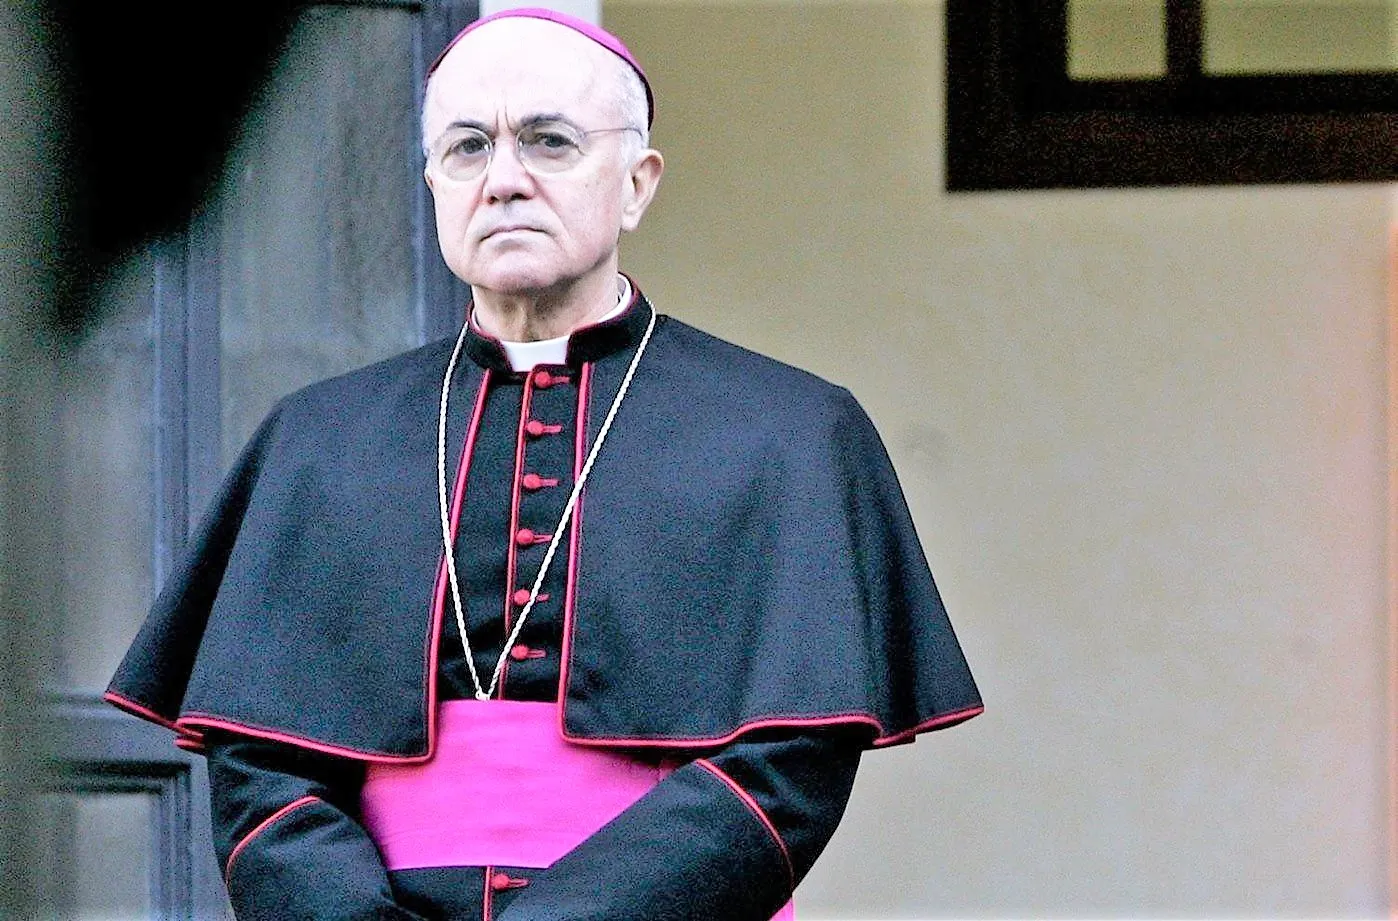 Archbishop Carlos Maria Vigano